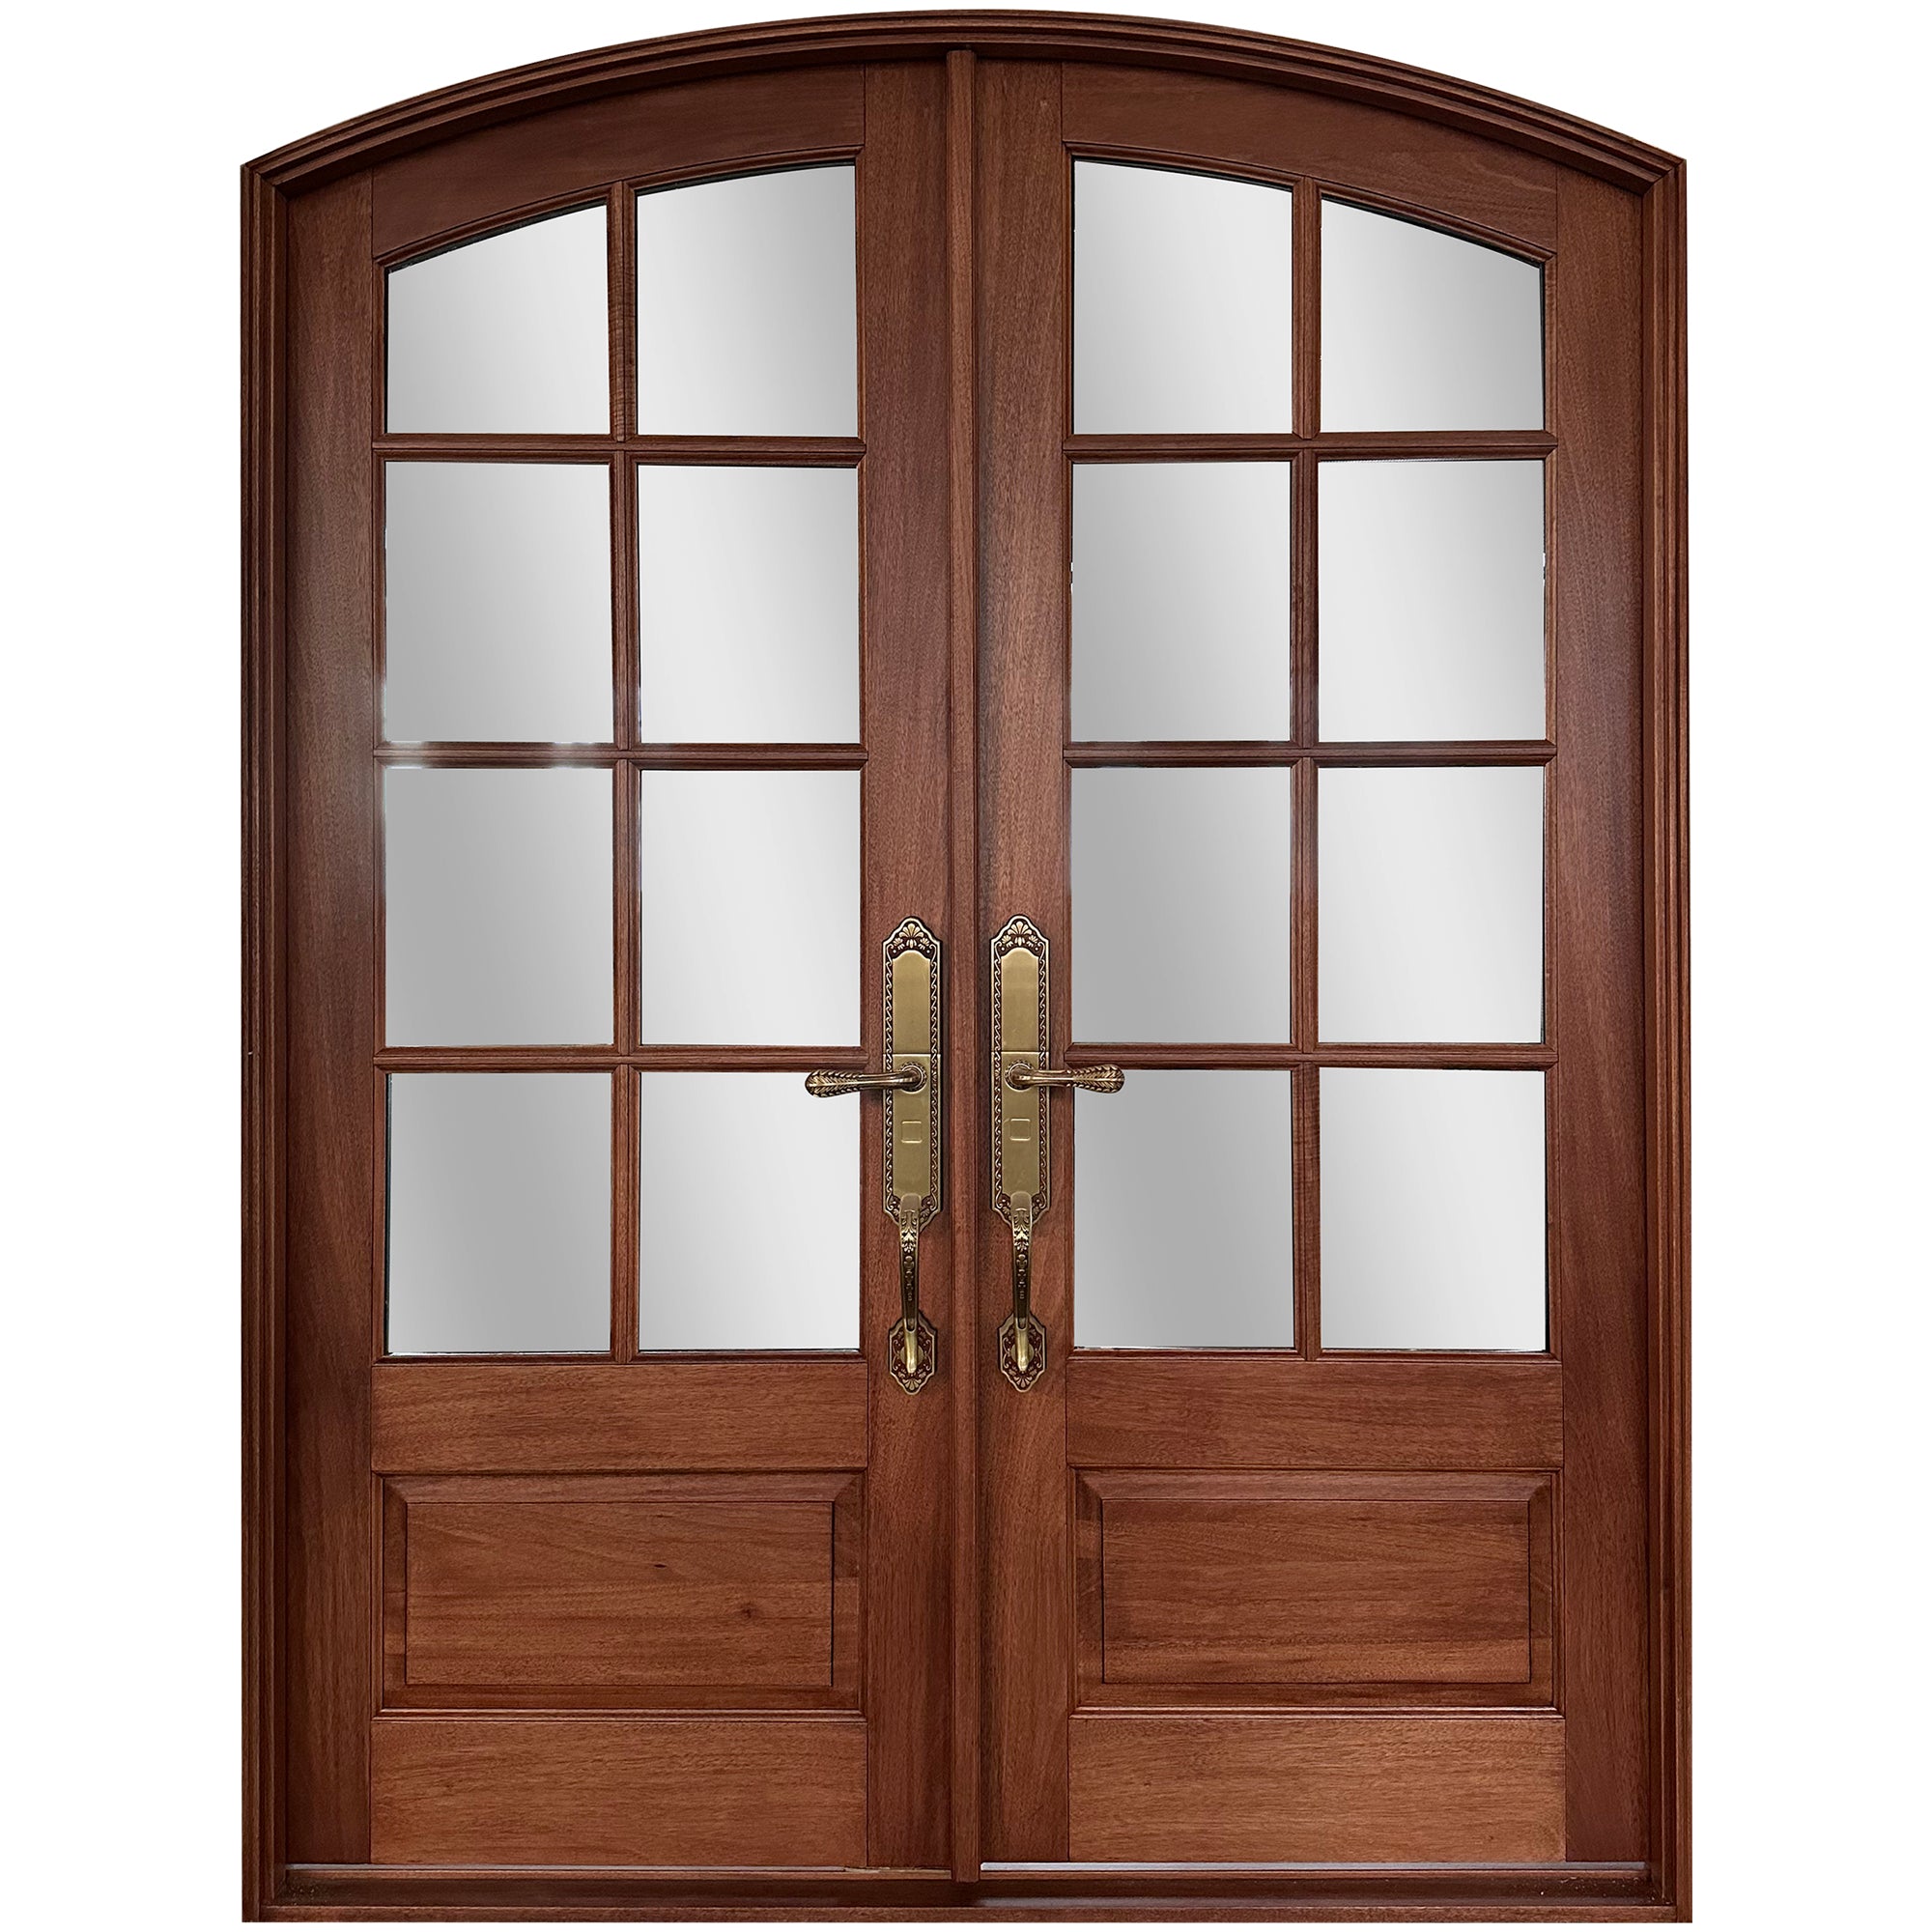 Arch Front Double Solid Wood Door